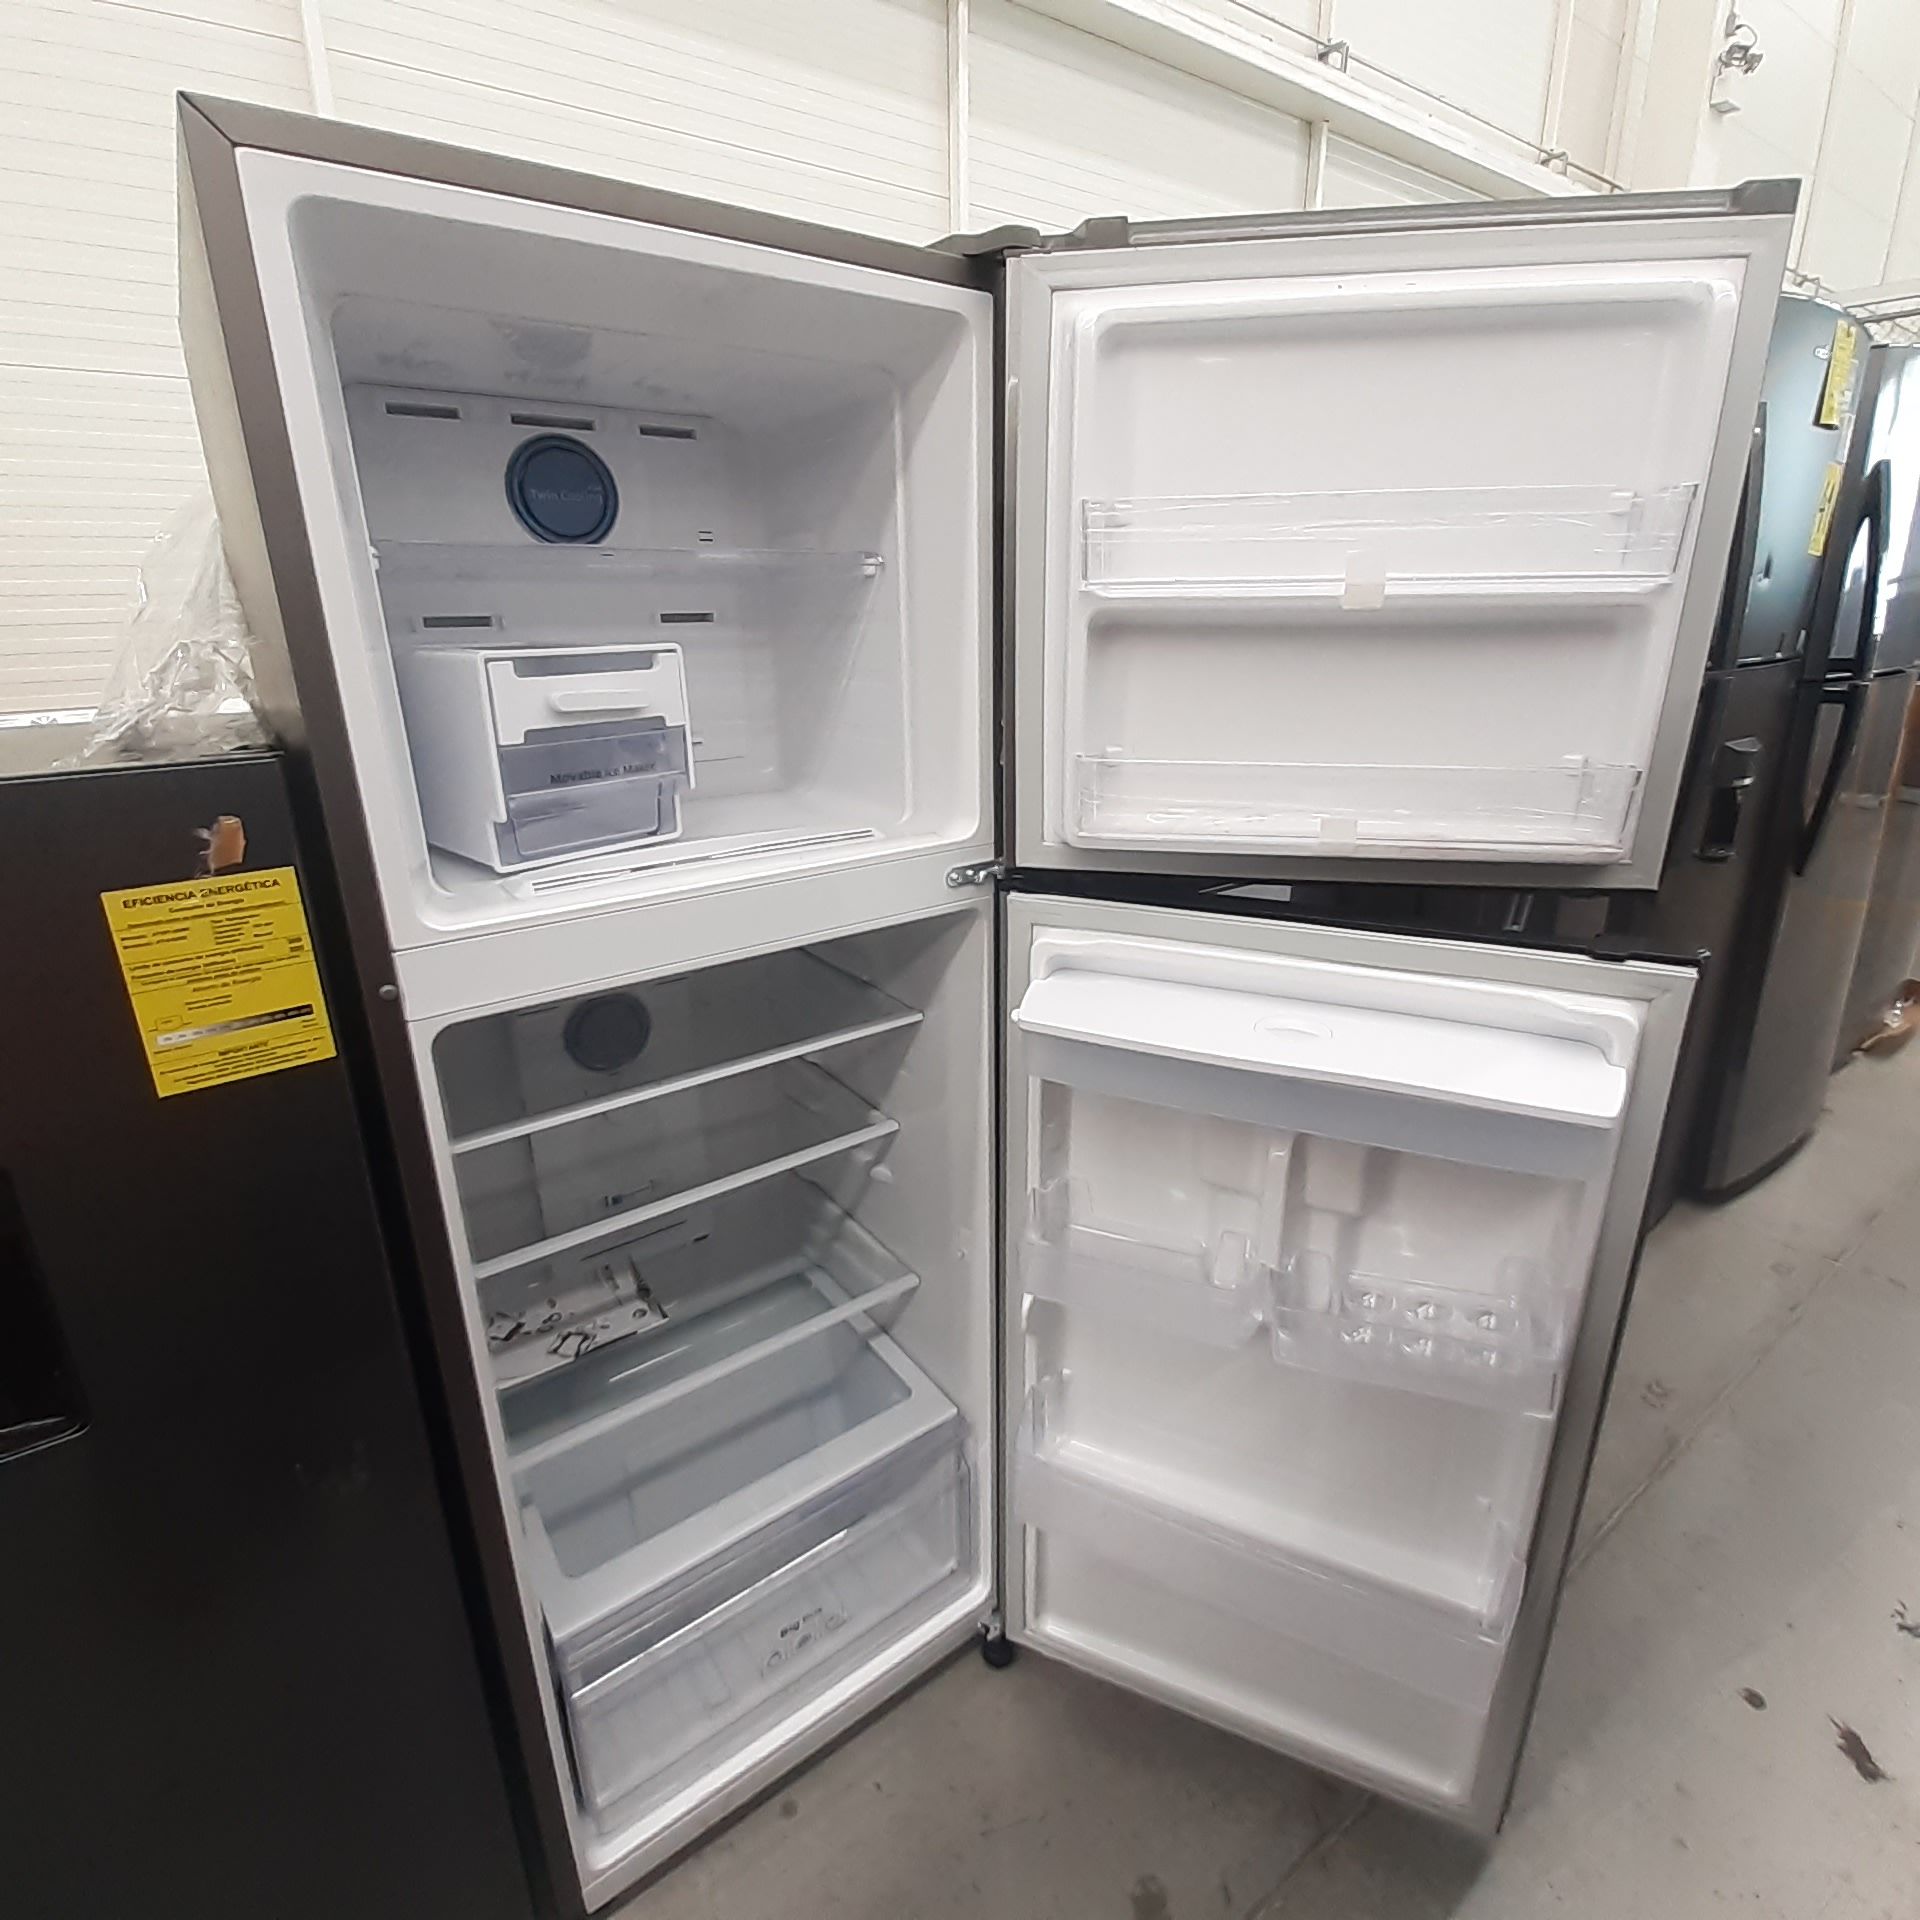 Lote De 2 Refrigeradores: 1 Refrigerador Con Dispensador De Agua Marca Samsung, 1 Refrigerador Marca - Image 9 of 18